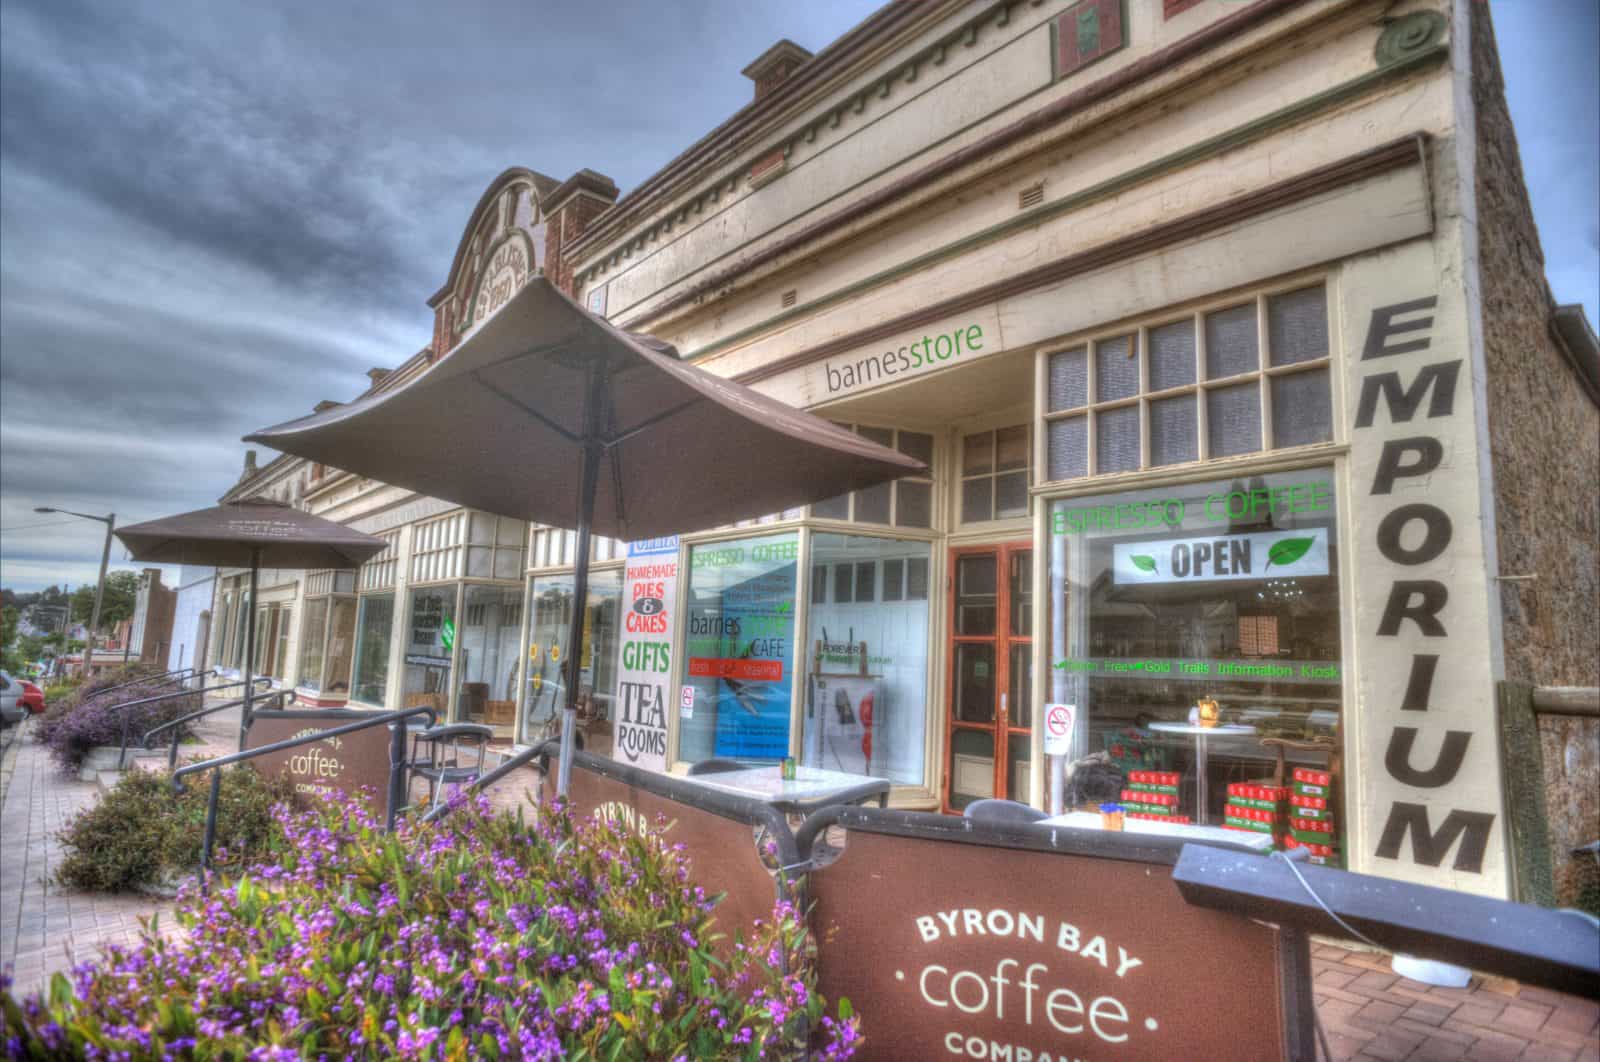 Barnes Store Cafe - Murrumburrah